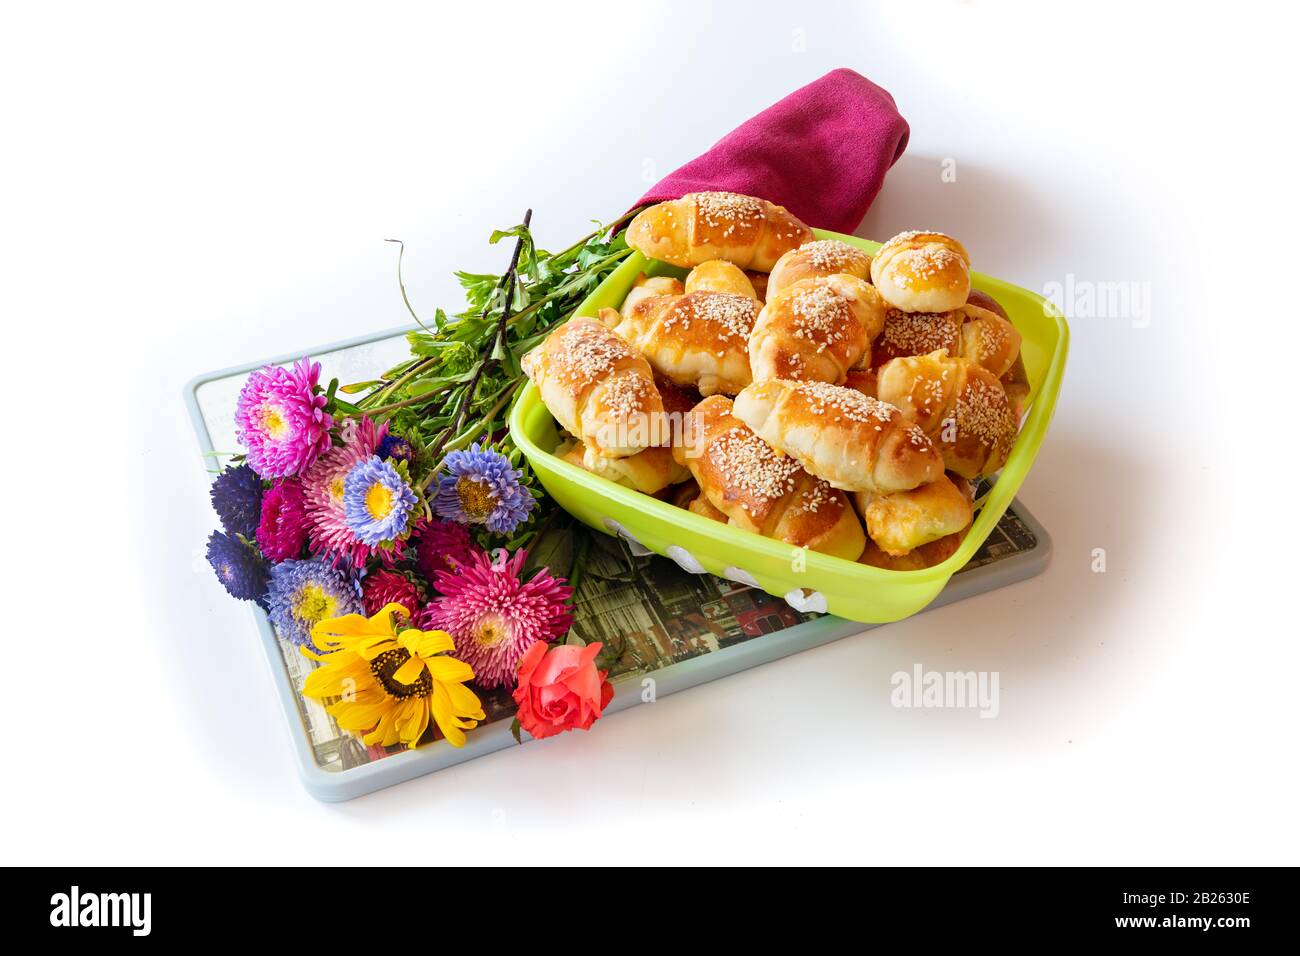 Petits pains au fromage, frais, croquants et chauds, servis avec amour, avec un grand bouquet de fleurs de champ, sur fond blanc Banque D'Images